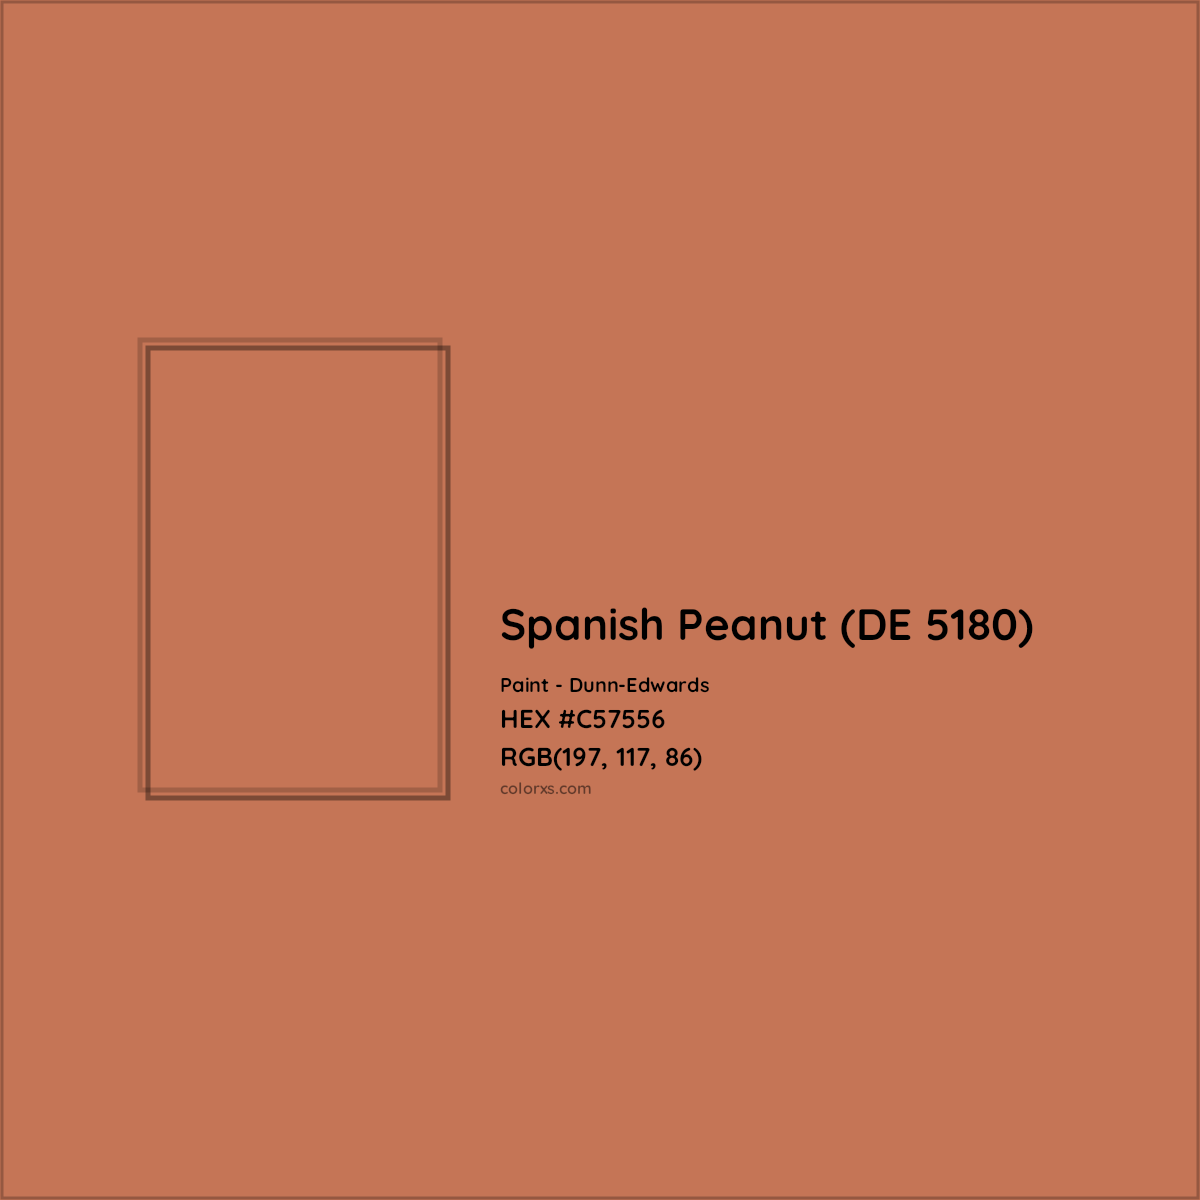 HEX #C57556 Spanish Peanut (DE 5180) Paint Dunn-Edwards - Color Code